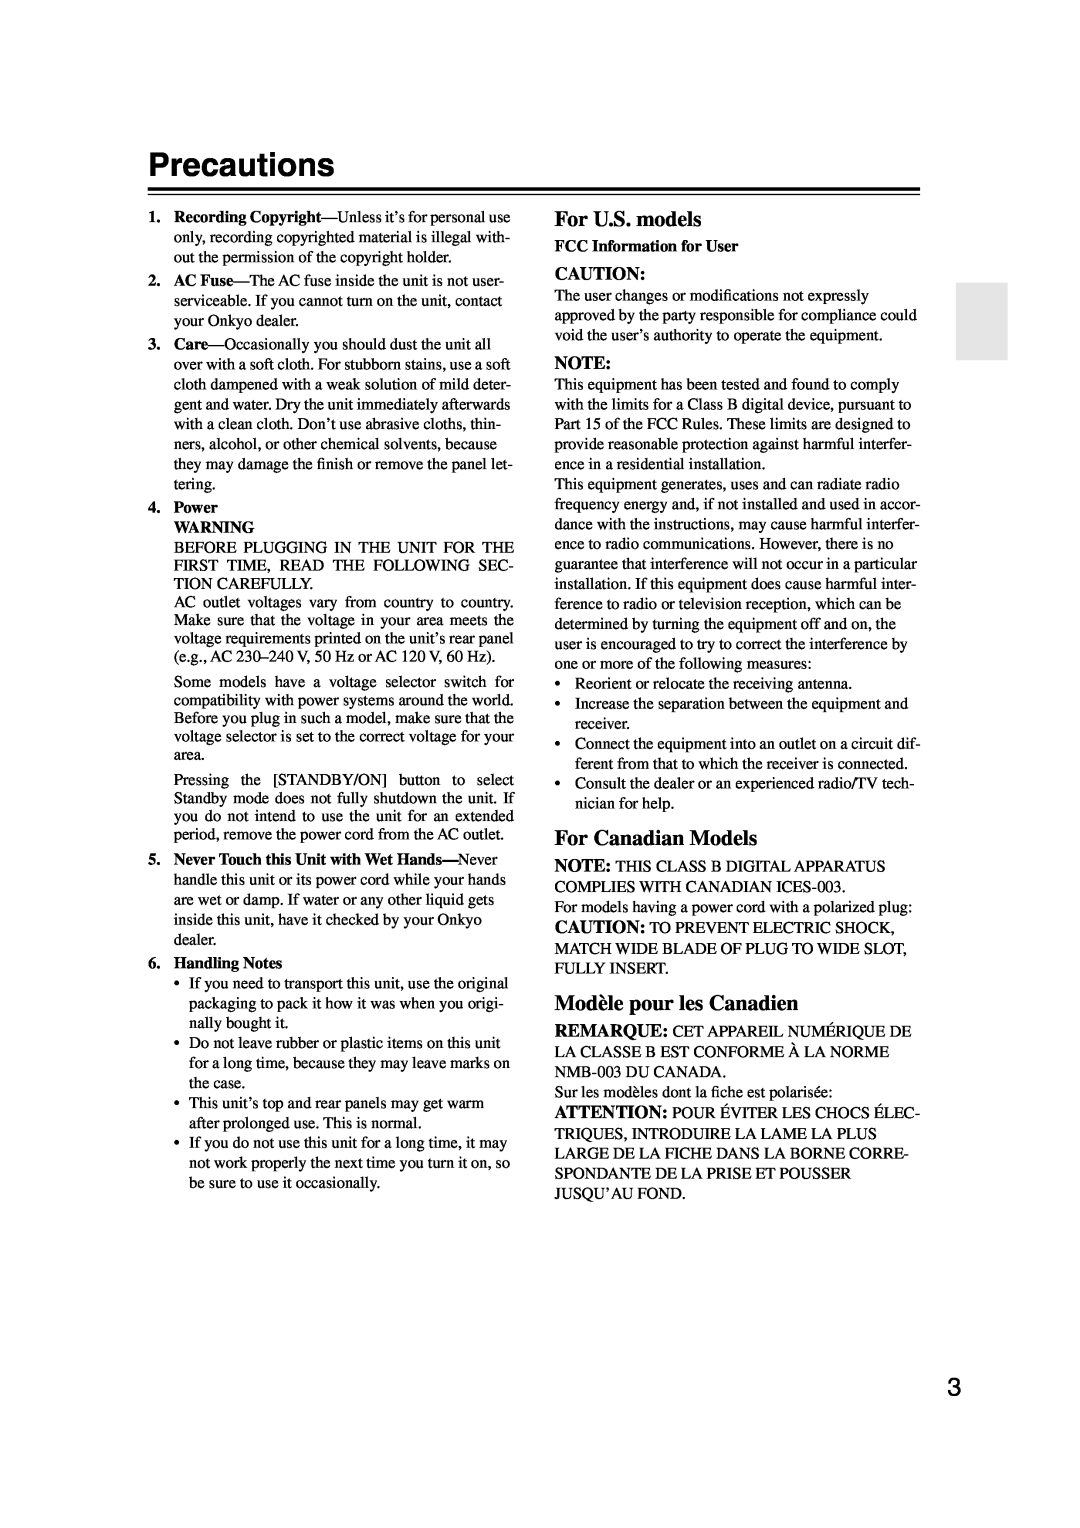 Onkyo HT-S590 instruction manual Precautions, For U.S. models, For Canadian Models, Modèle pour les Canadien 